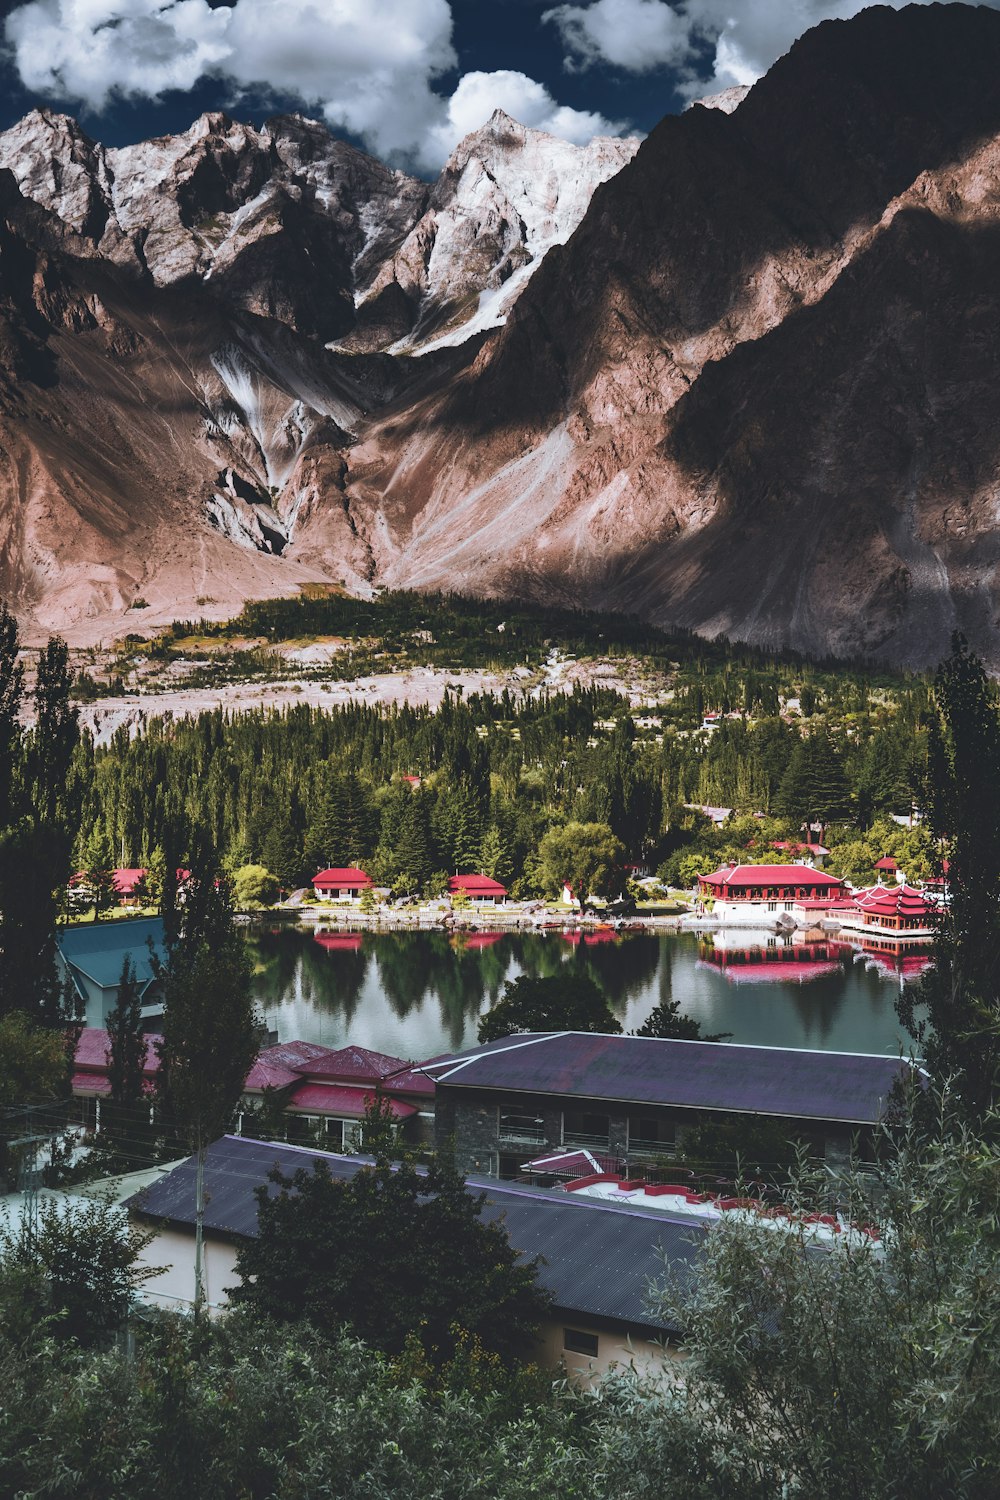 une vue panoramique d’un lac entouré de montagnes